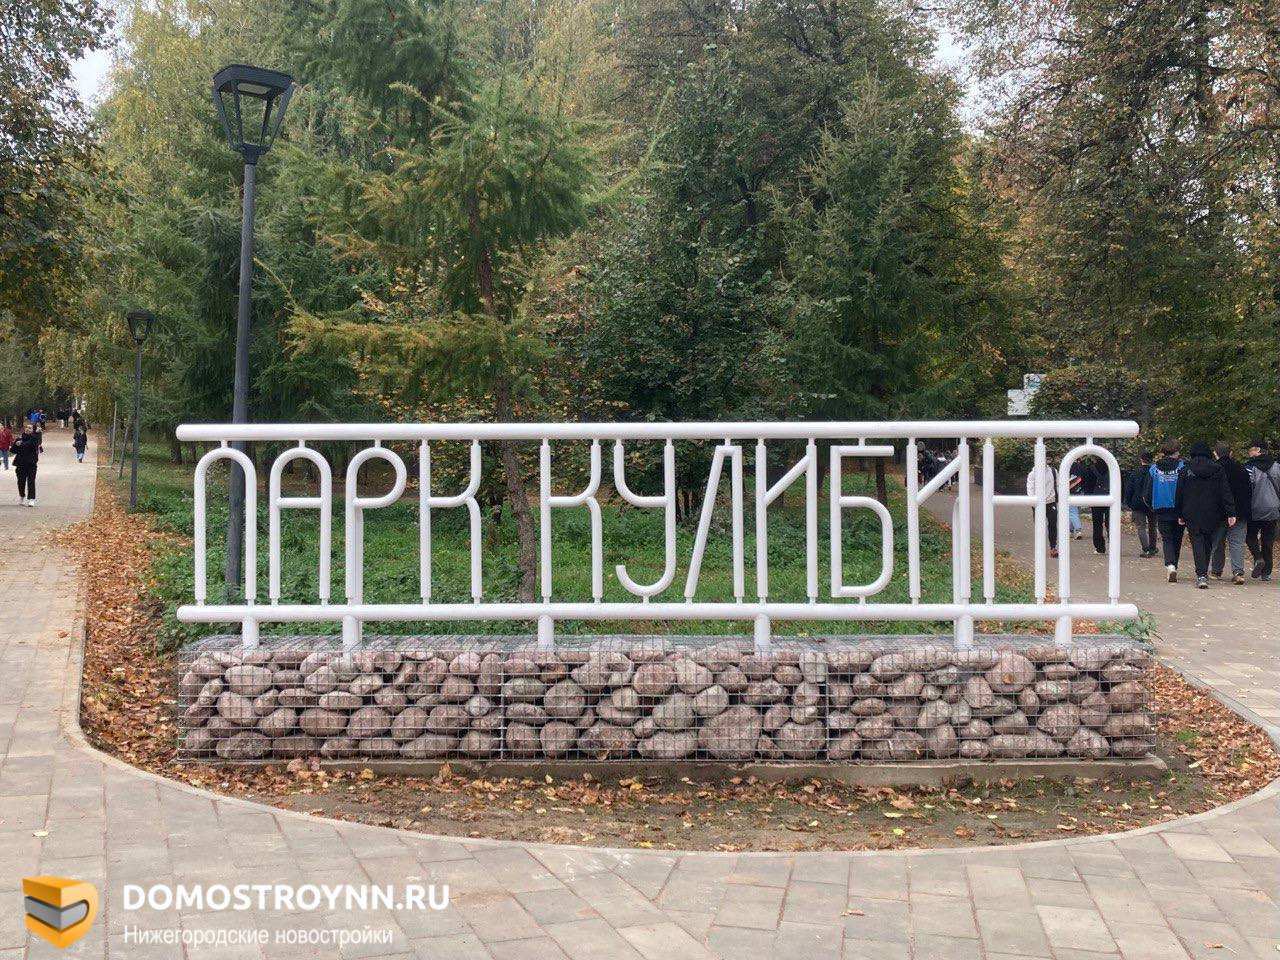 Сроки благоустройства двух пространств в Нижнем Новгороде сдвинулись на ноябрь - фото 1